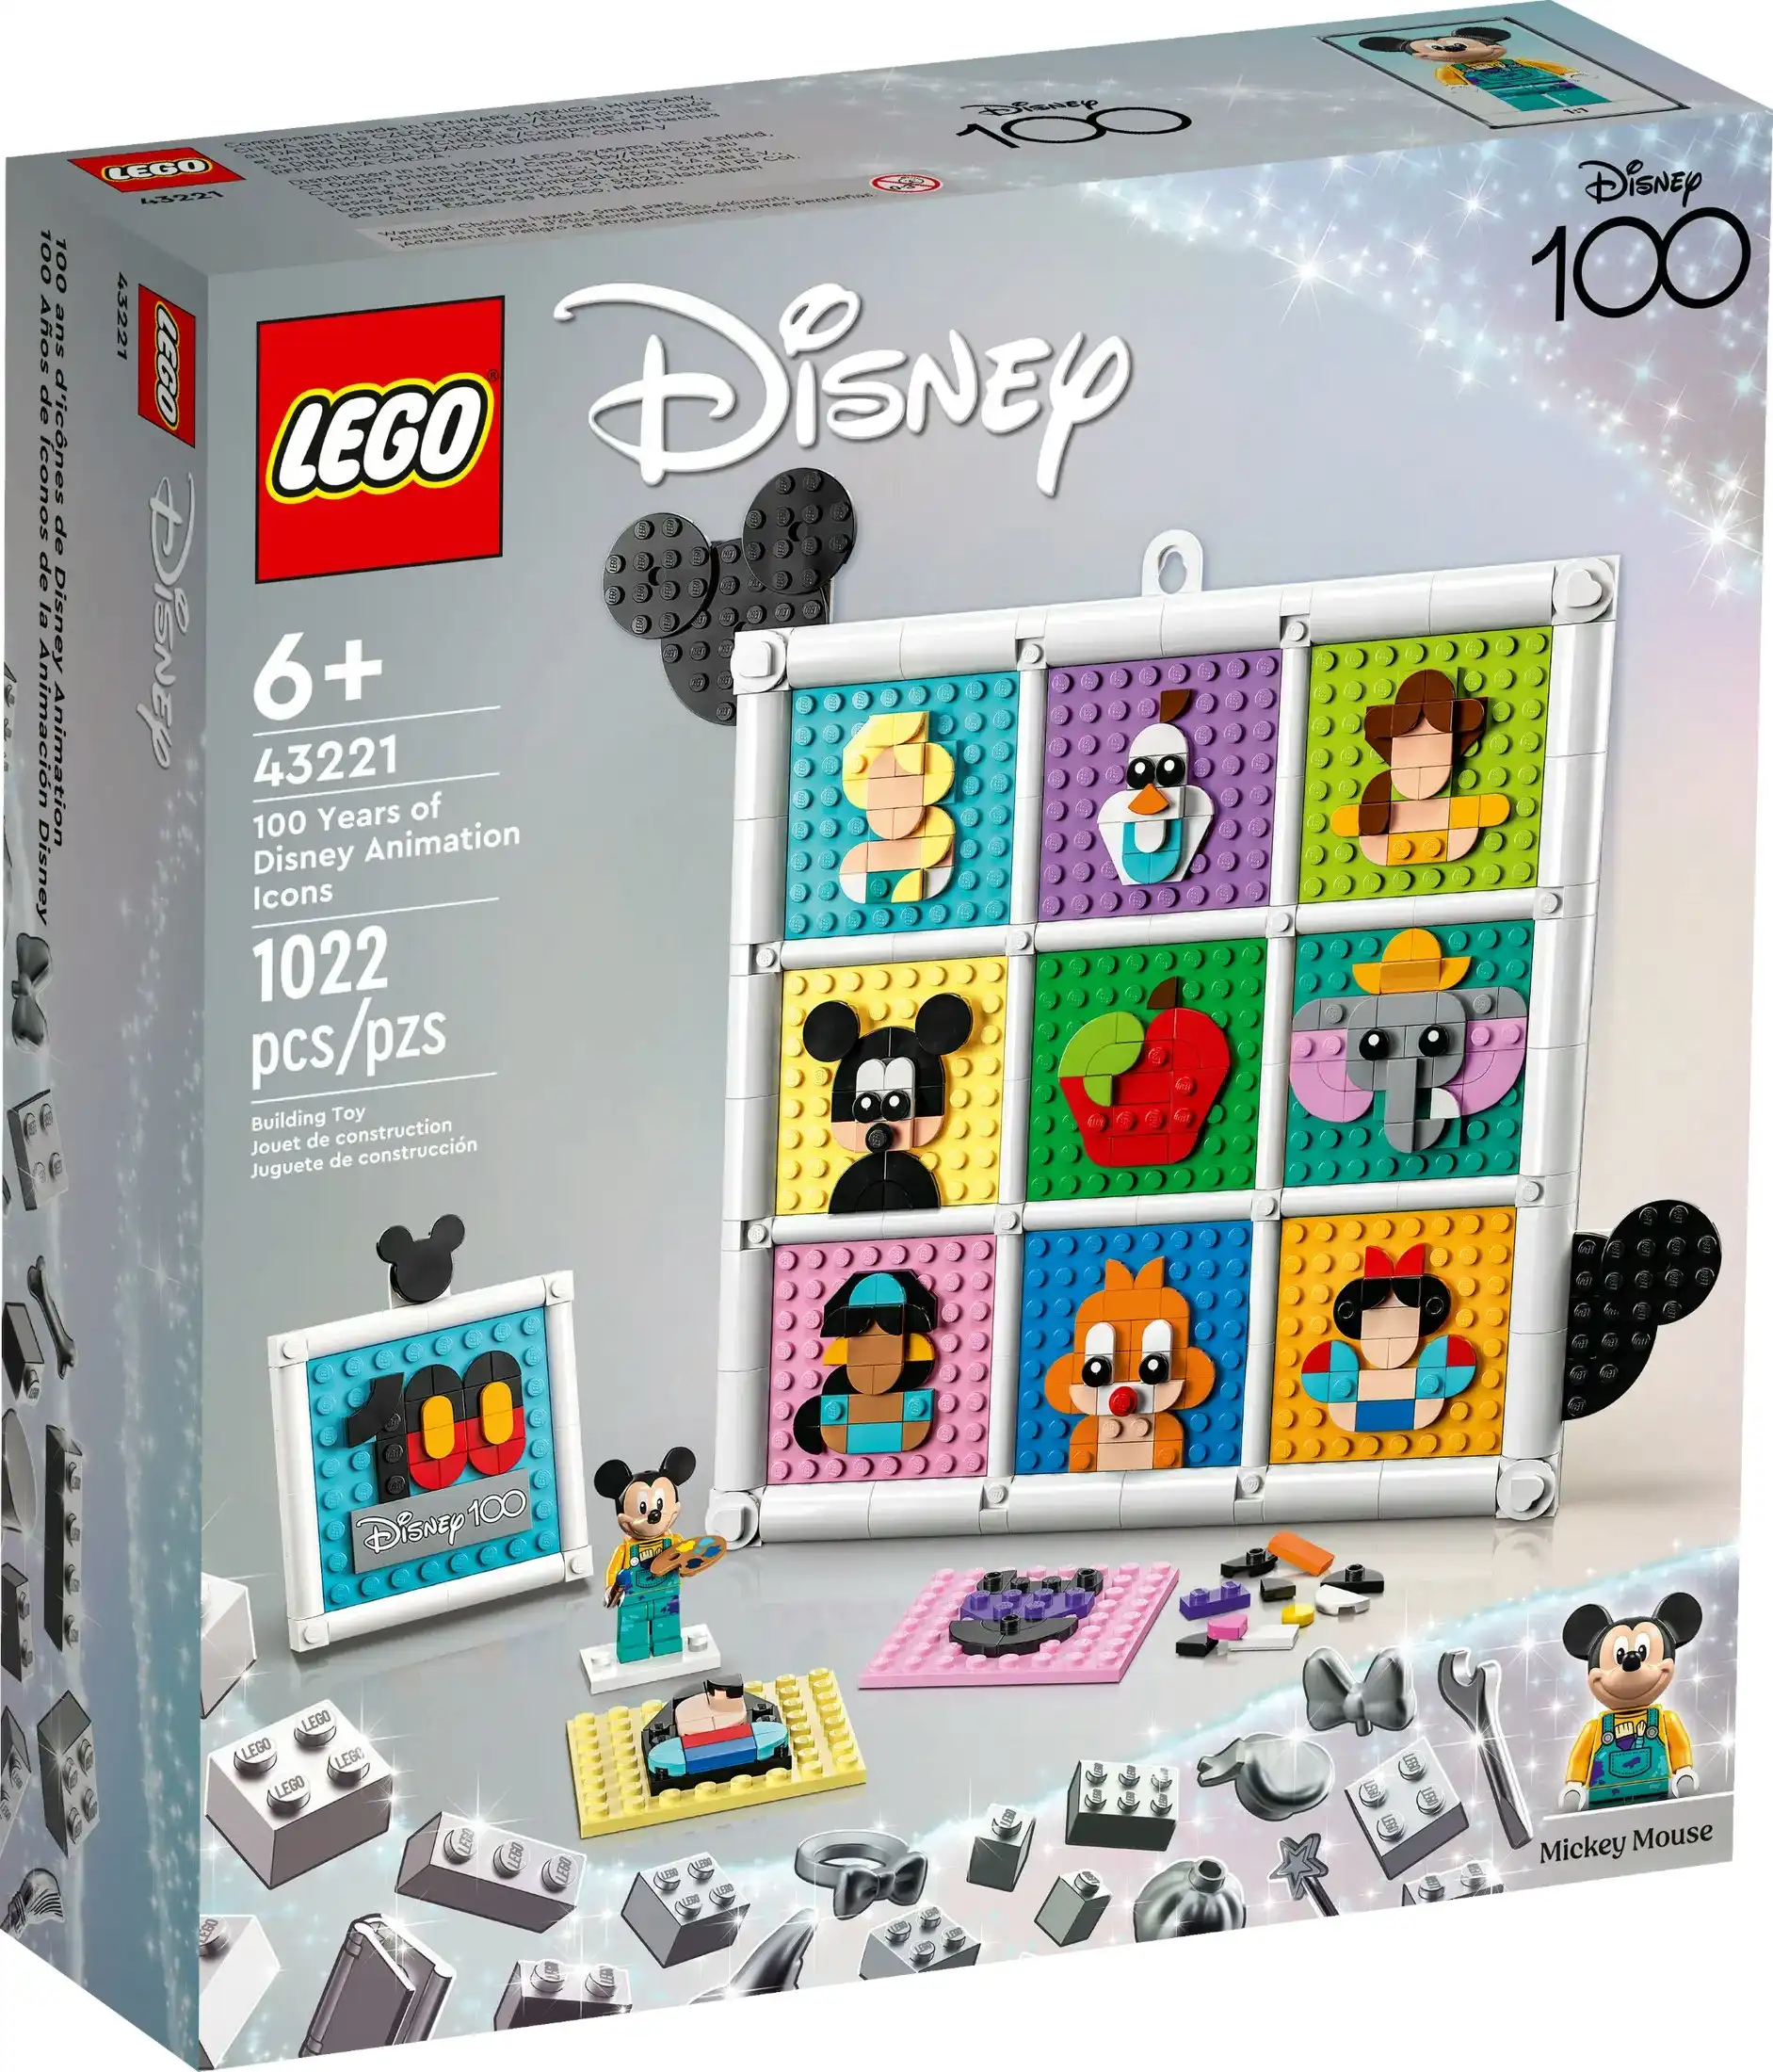 LEGO 43221 100 Years of Disney Animation Icons - Disney